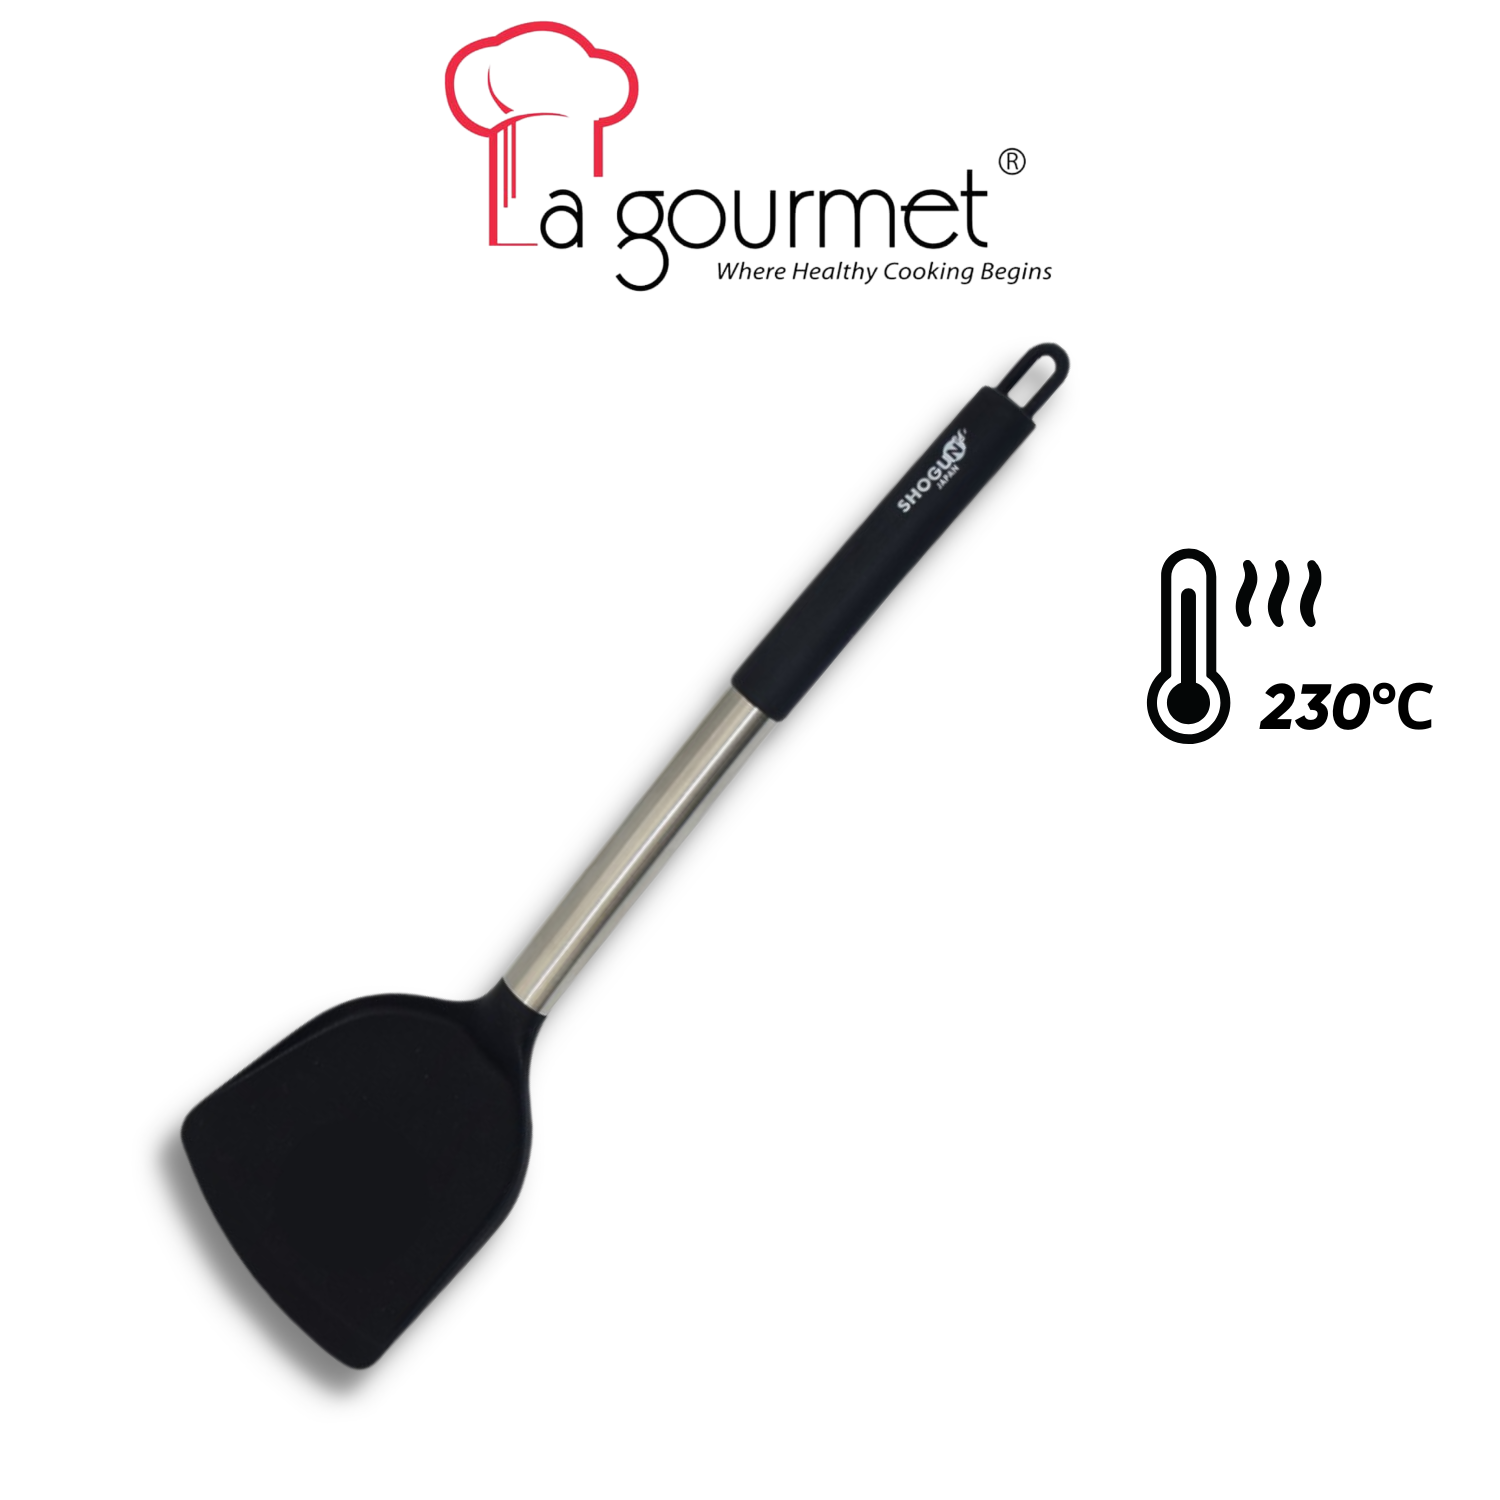 Xẻng lật silicone La gourmet Shogun- 361820 (chịu nhiệt 230 độ C)